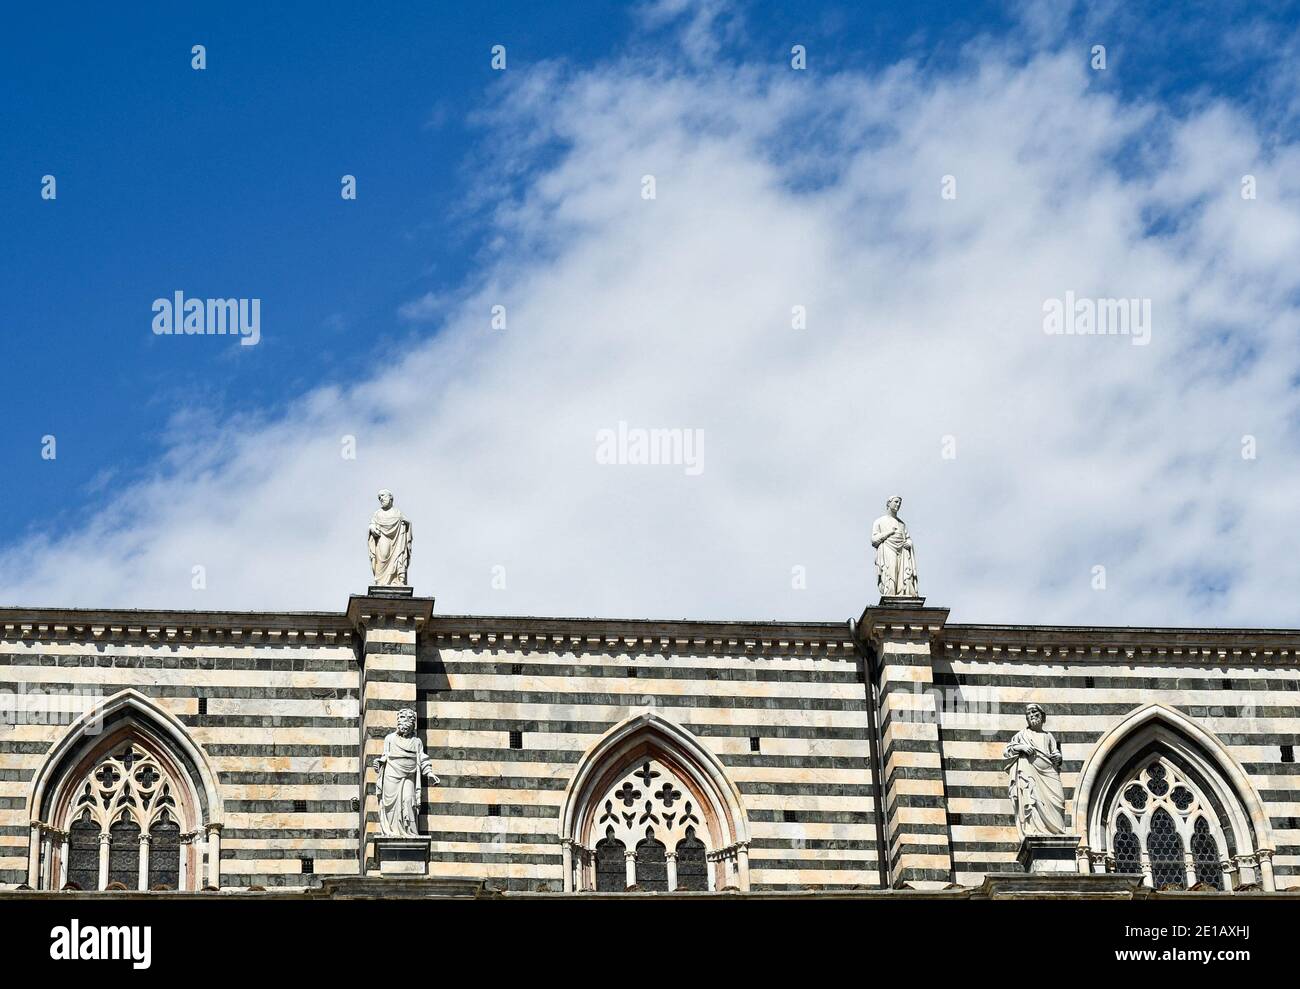 Partie supérieure du côté droit de la cathédrale de Sienne (XIIIe siècle) avec des fenêtres pointues et des statues de saints sur le dessus contre le ciel bleu, Toscane, Italie Banque D'Images